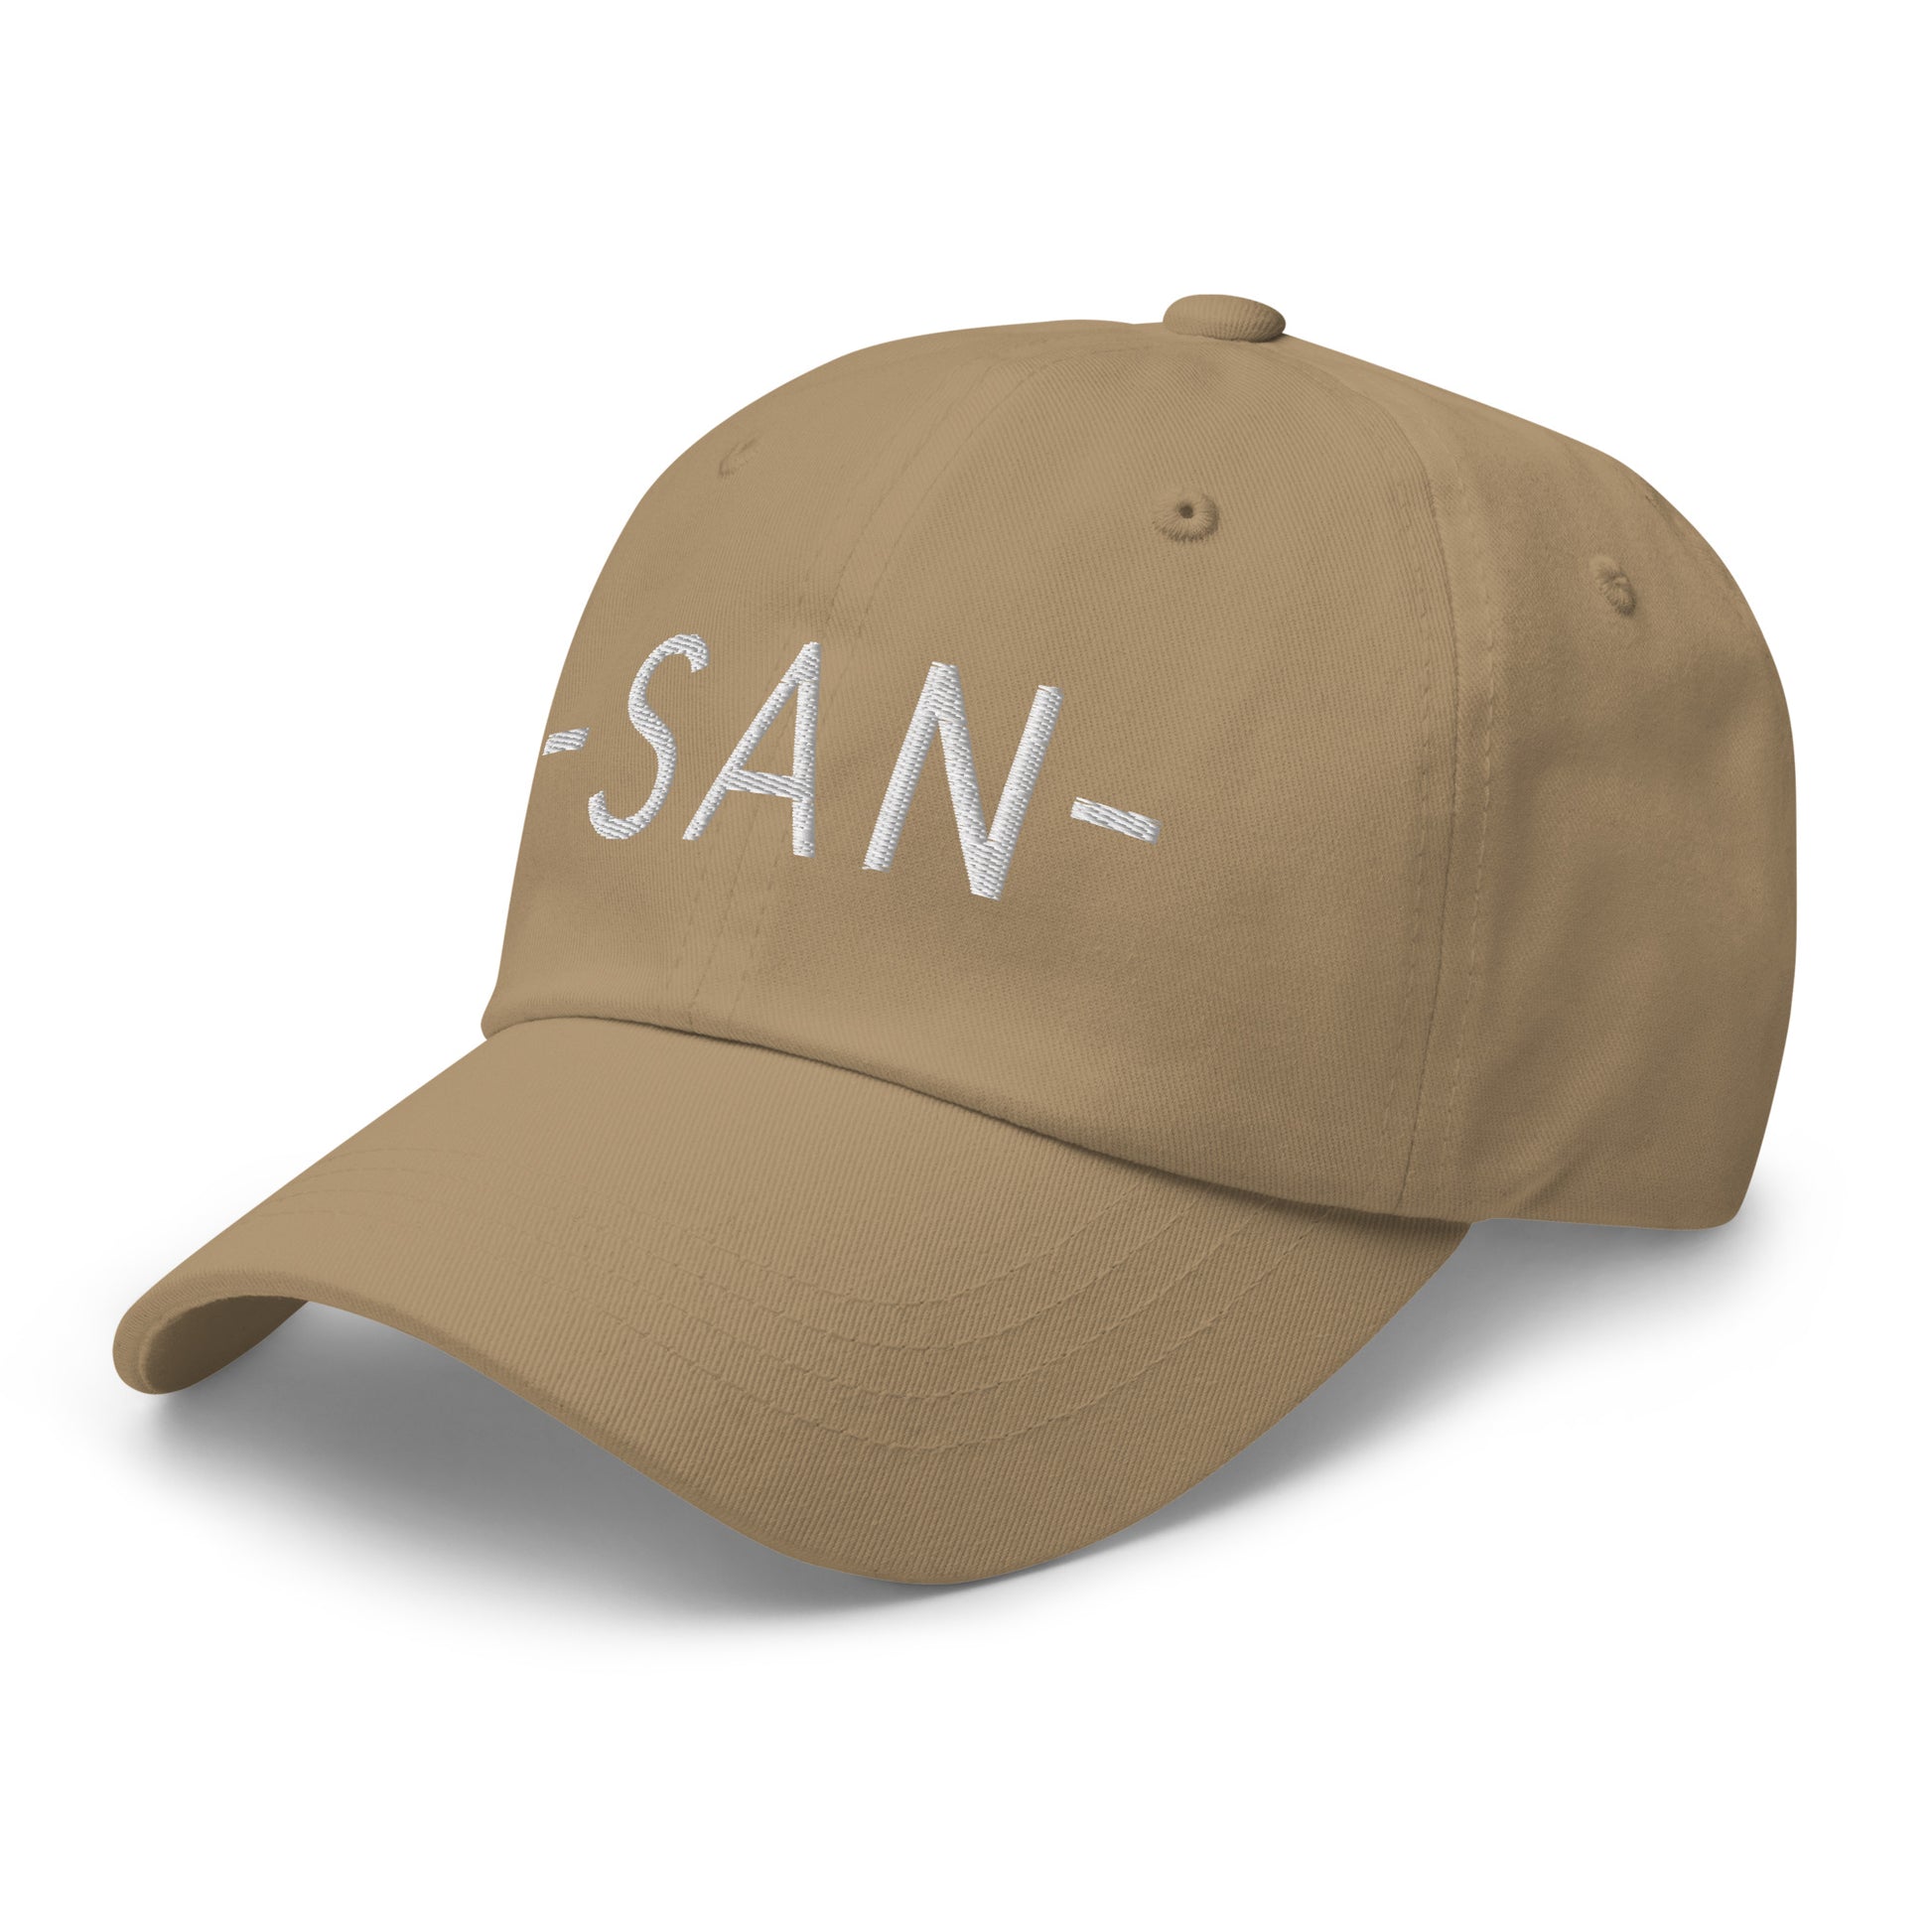 Souvenir Baseball Cap - White • SAN San Diego • YHM Designs - Image 22